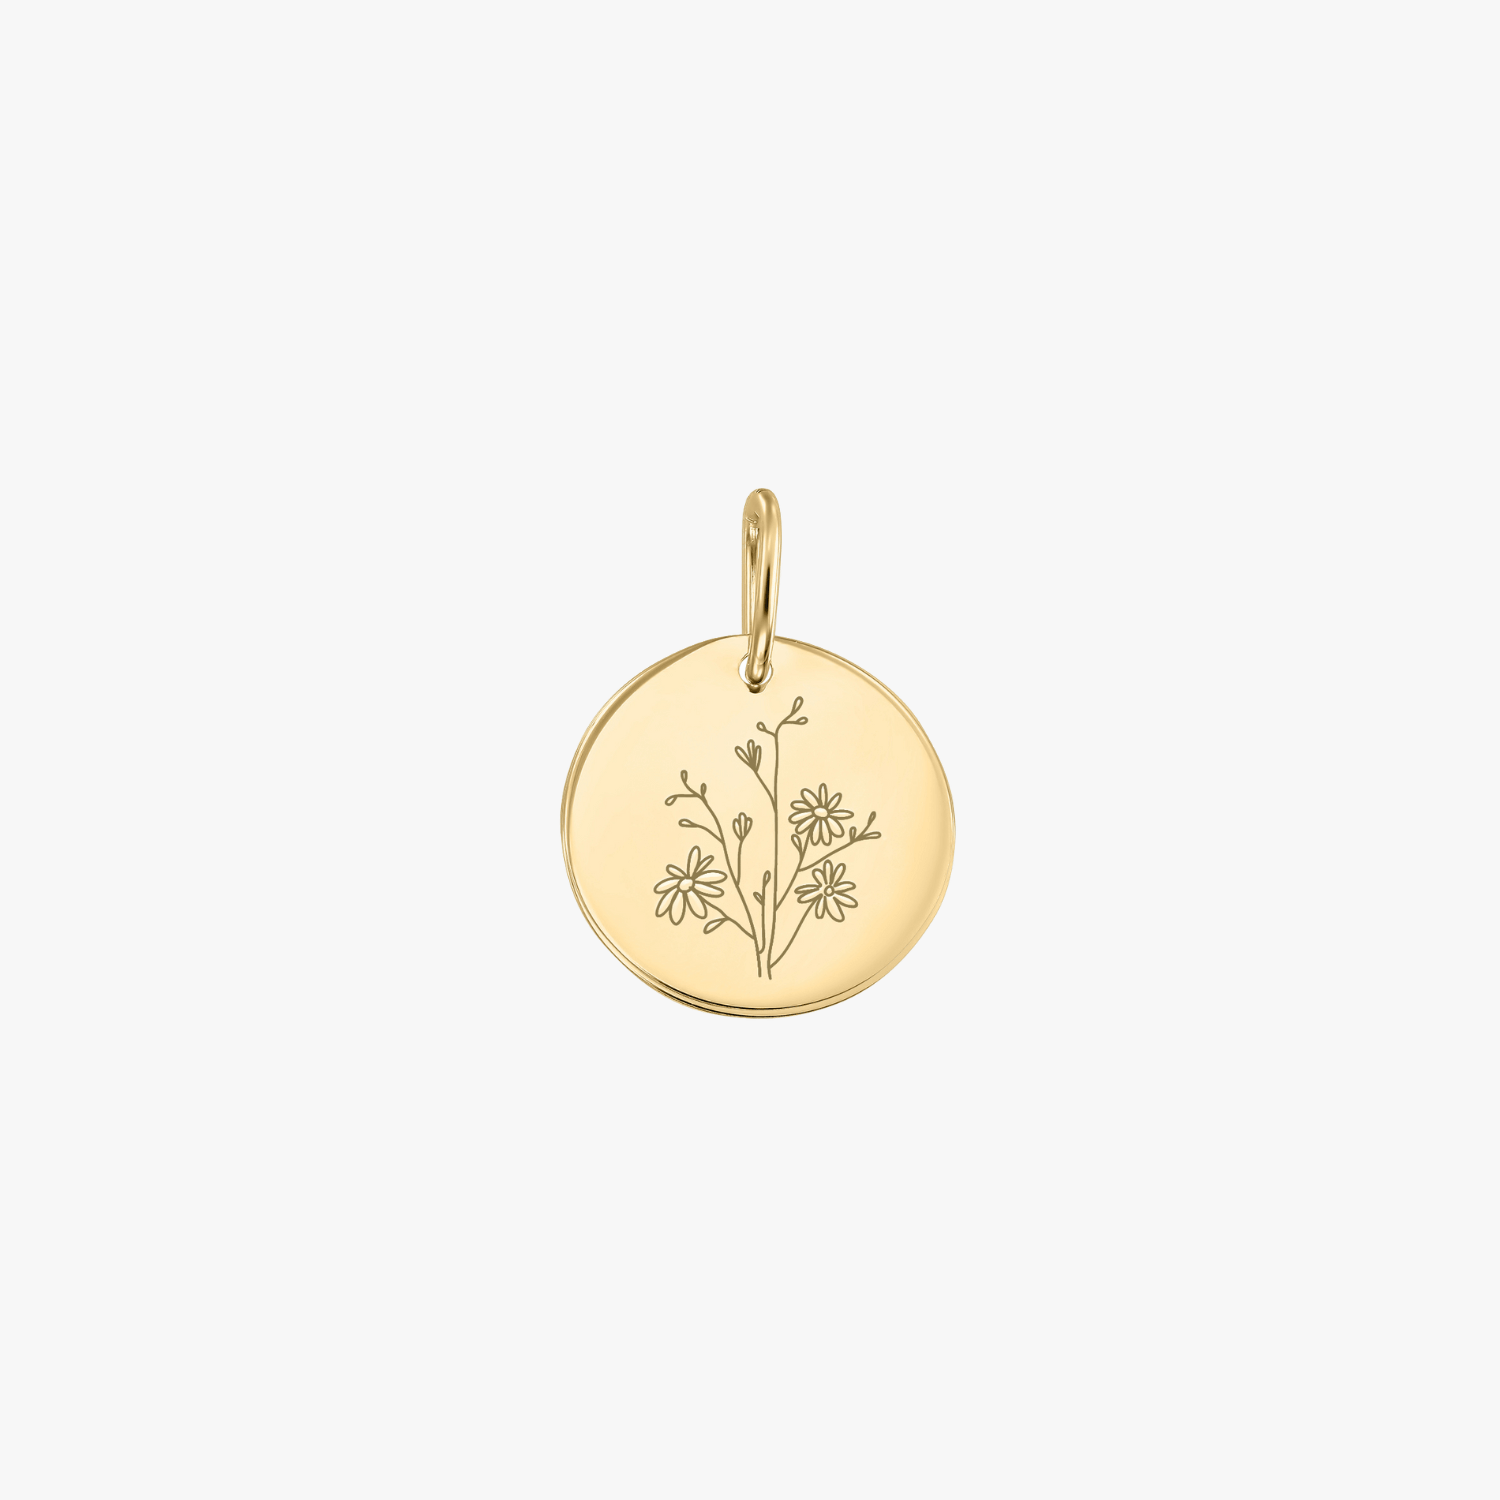 Birth Flower - September Aster gold pendant